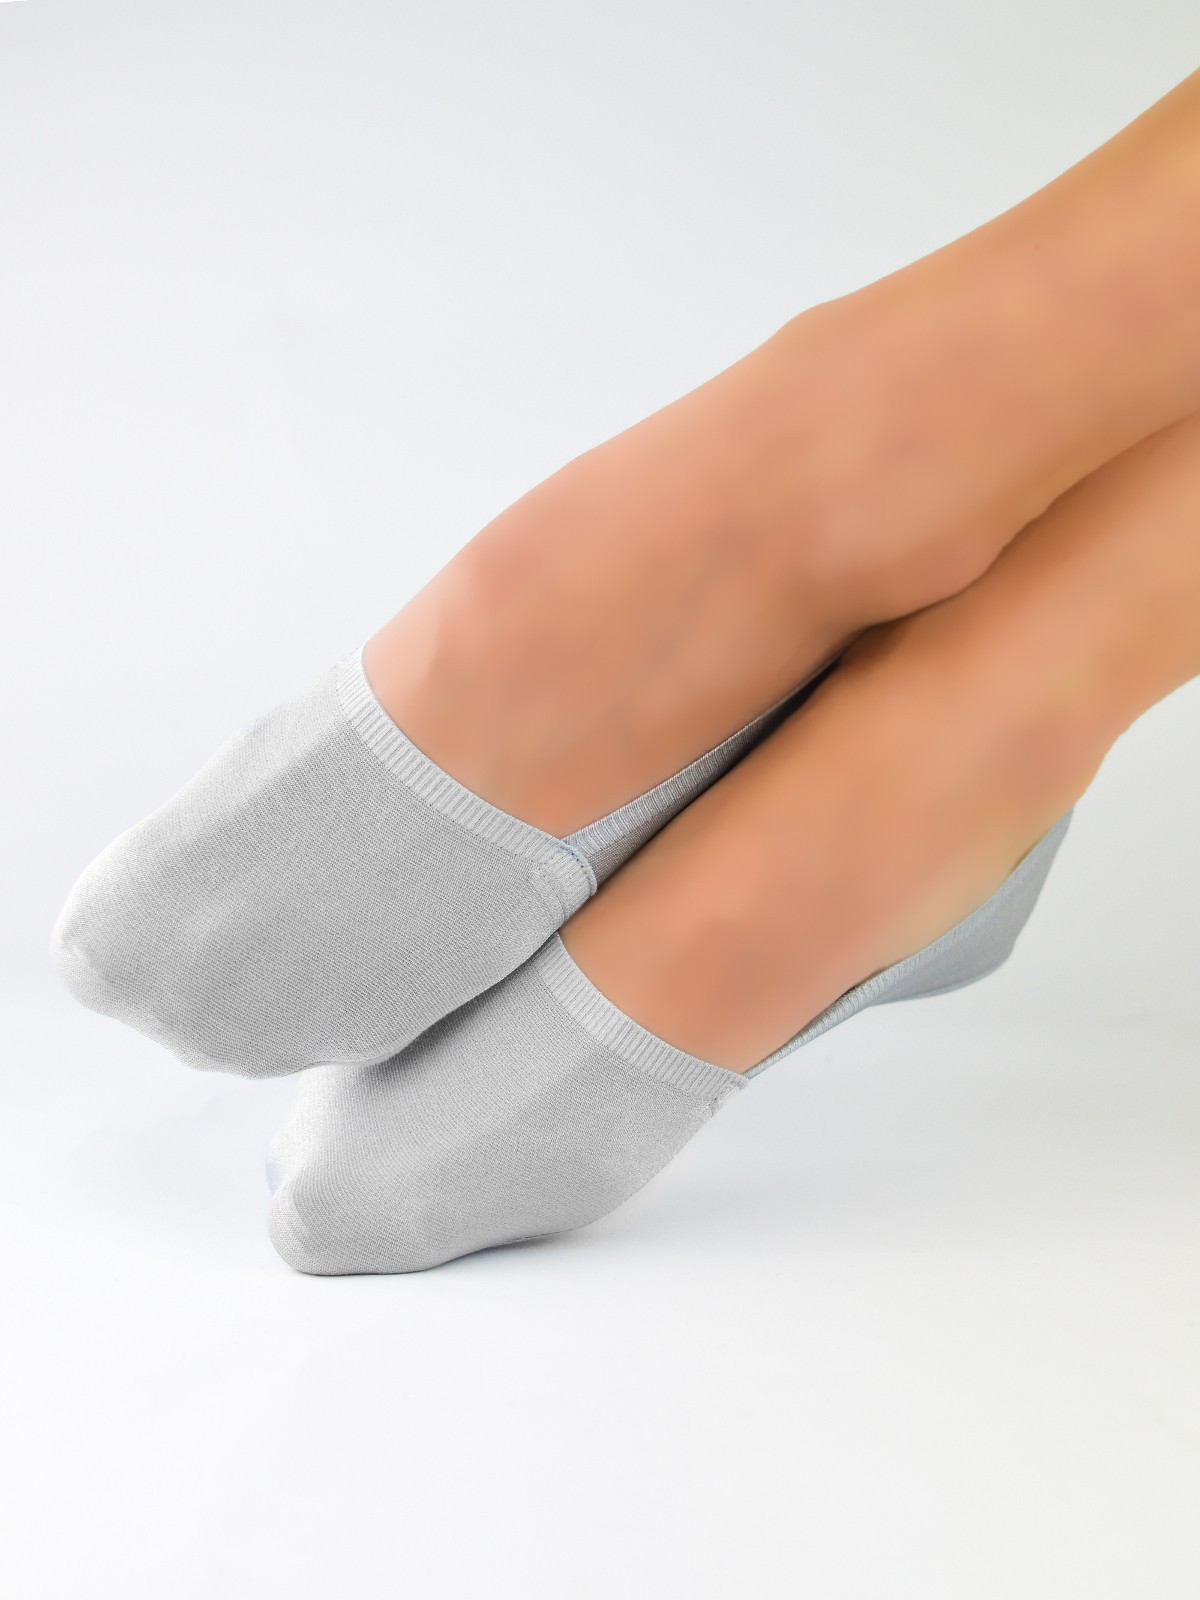 Dámské ponožky - baleríny Noviti SN024 Laserové, Silikon, ABS černá 36-41